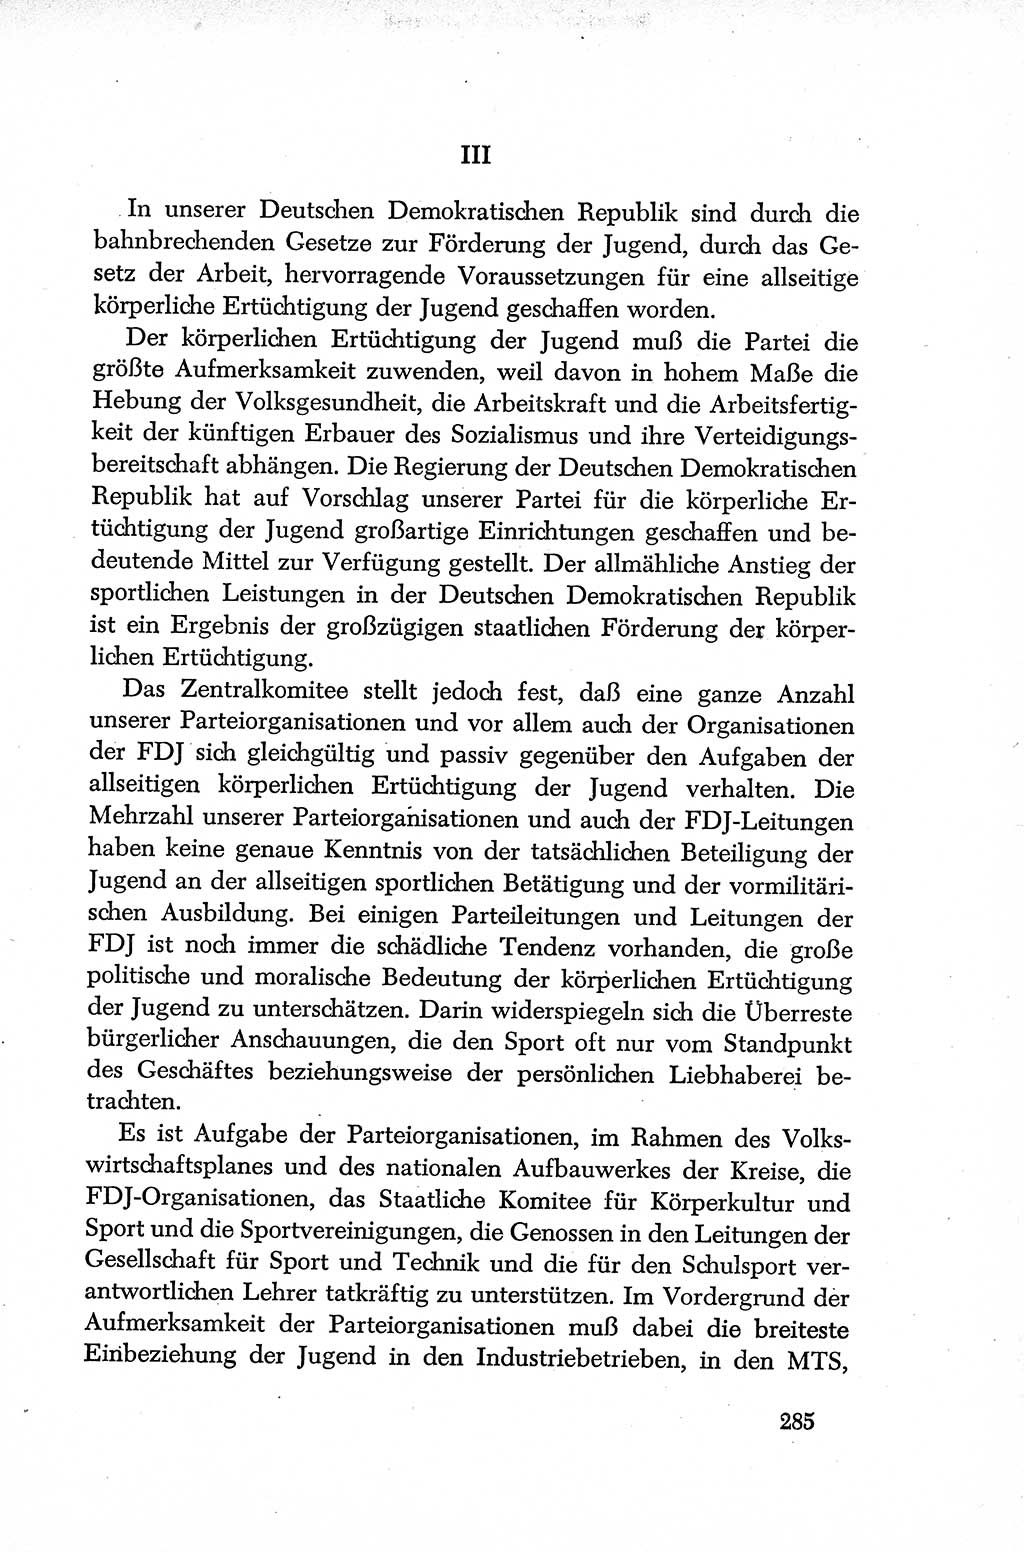 Dokumente der Sozialistischen Einheitspartei Deutschlands (SED) [Deutsche Demokratische Republik (DDR)] 1952-1953, Seite 285 (Dok. SED DDR 1952-1953, S. 285)